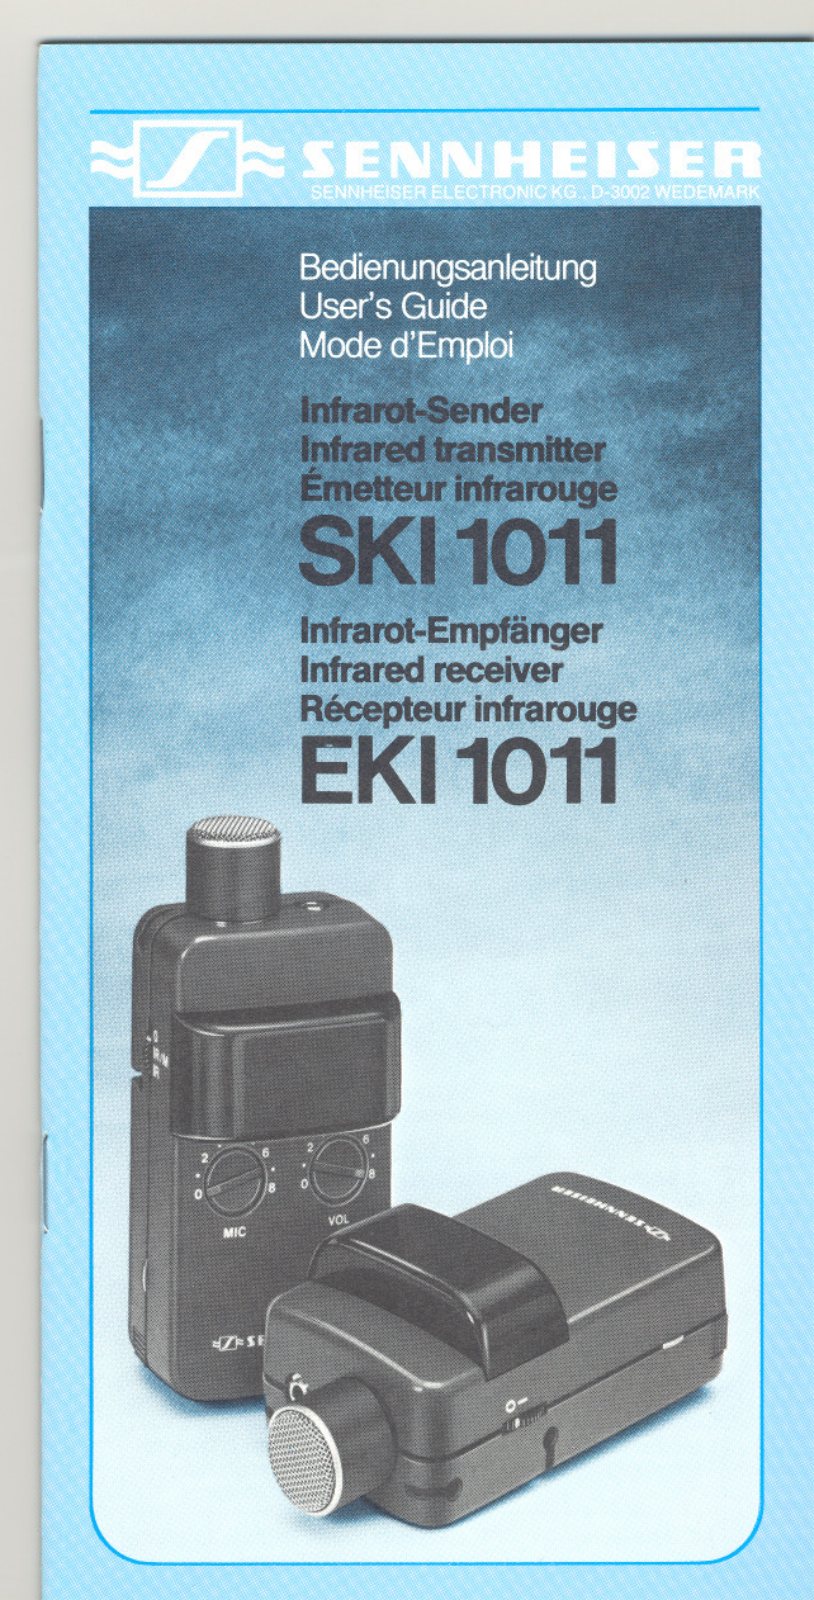 SENNHEISER EKI 1011, SKI 1011 User Manual